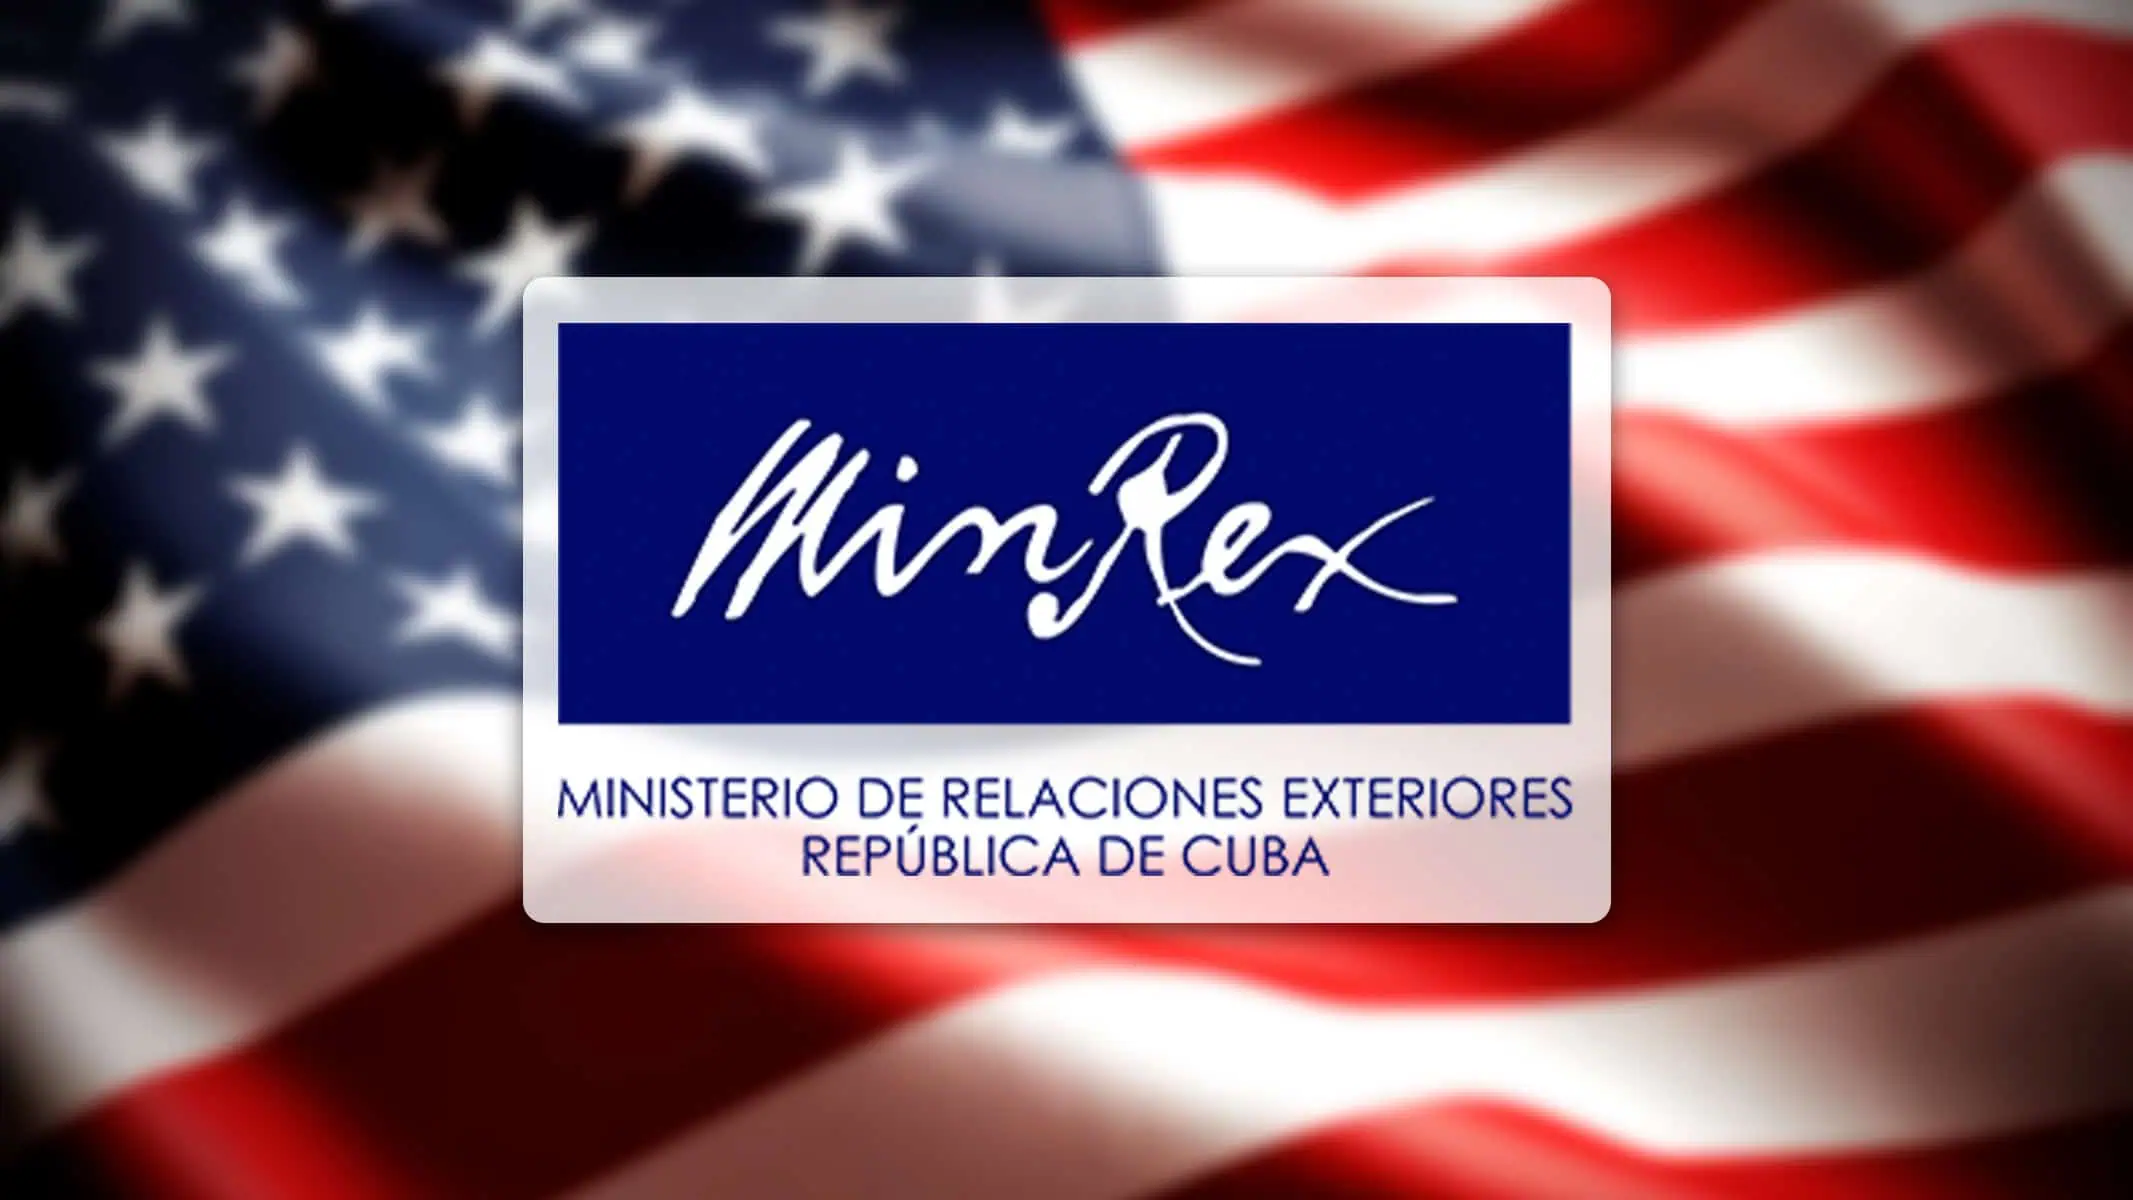 MINREX Critica Acciones de EE.UU. que Segmentan Sociedad Cubana: Una Sola Cuba